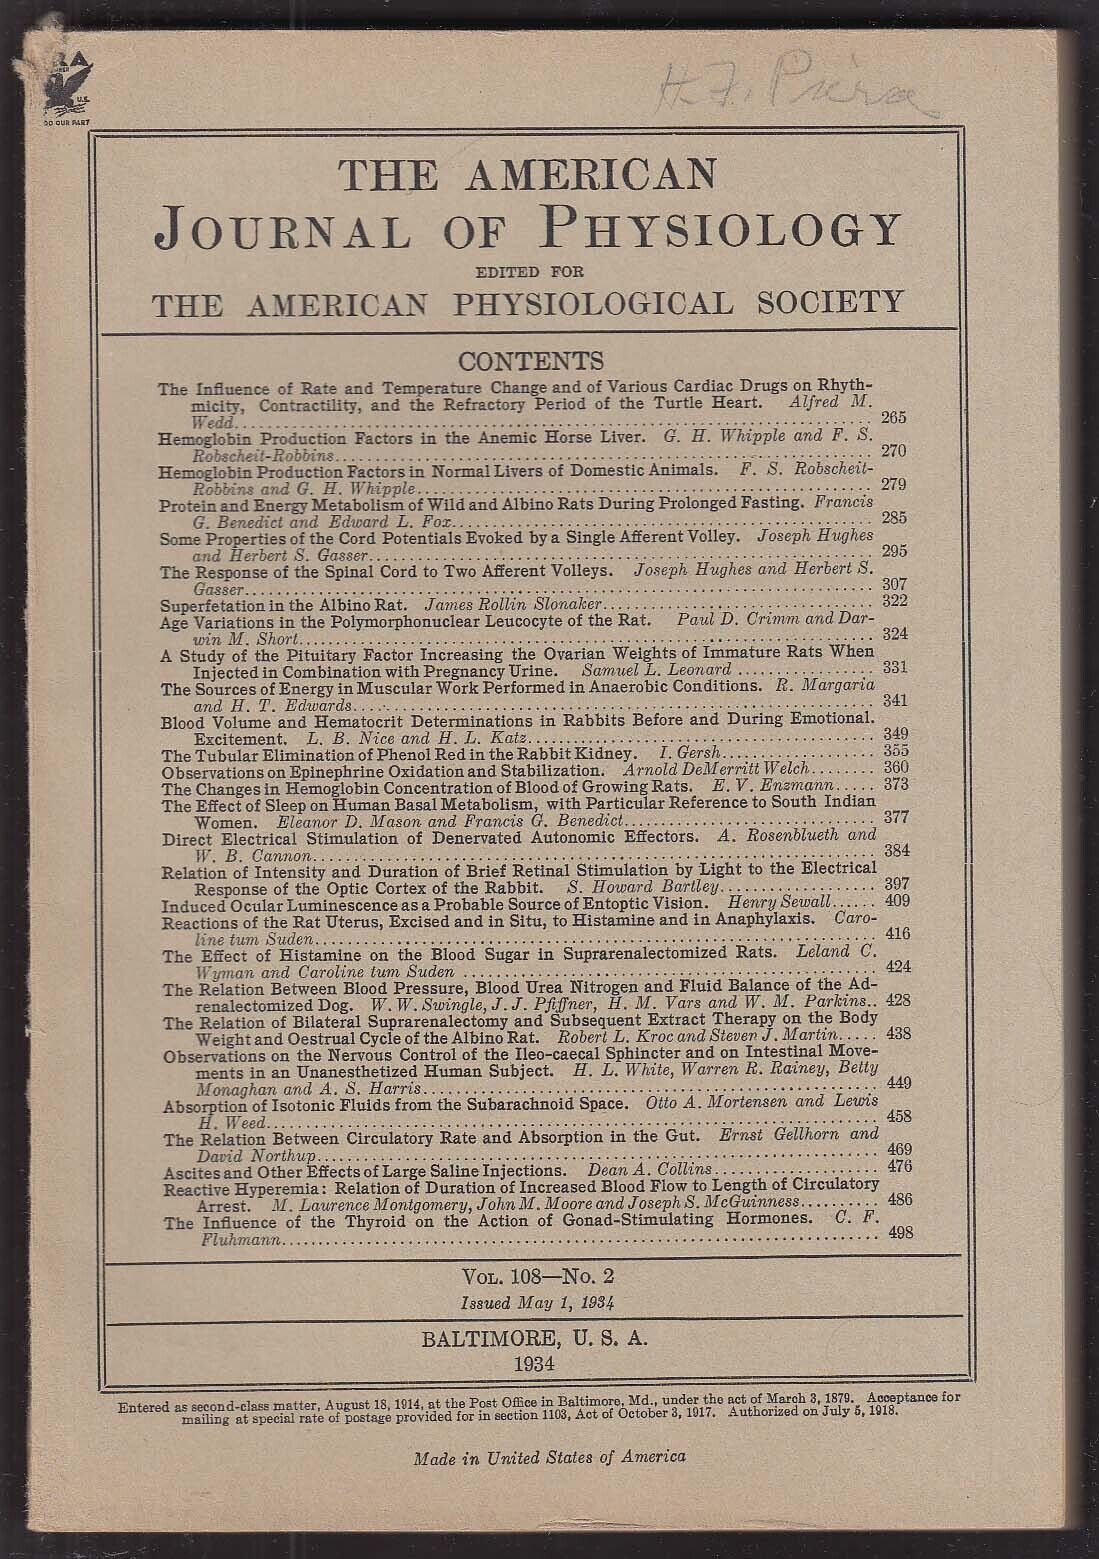 American Journal of Physiology v108n2 1934 Herbert S Gasser